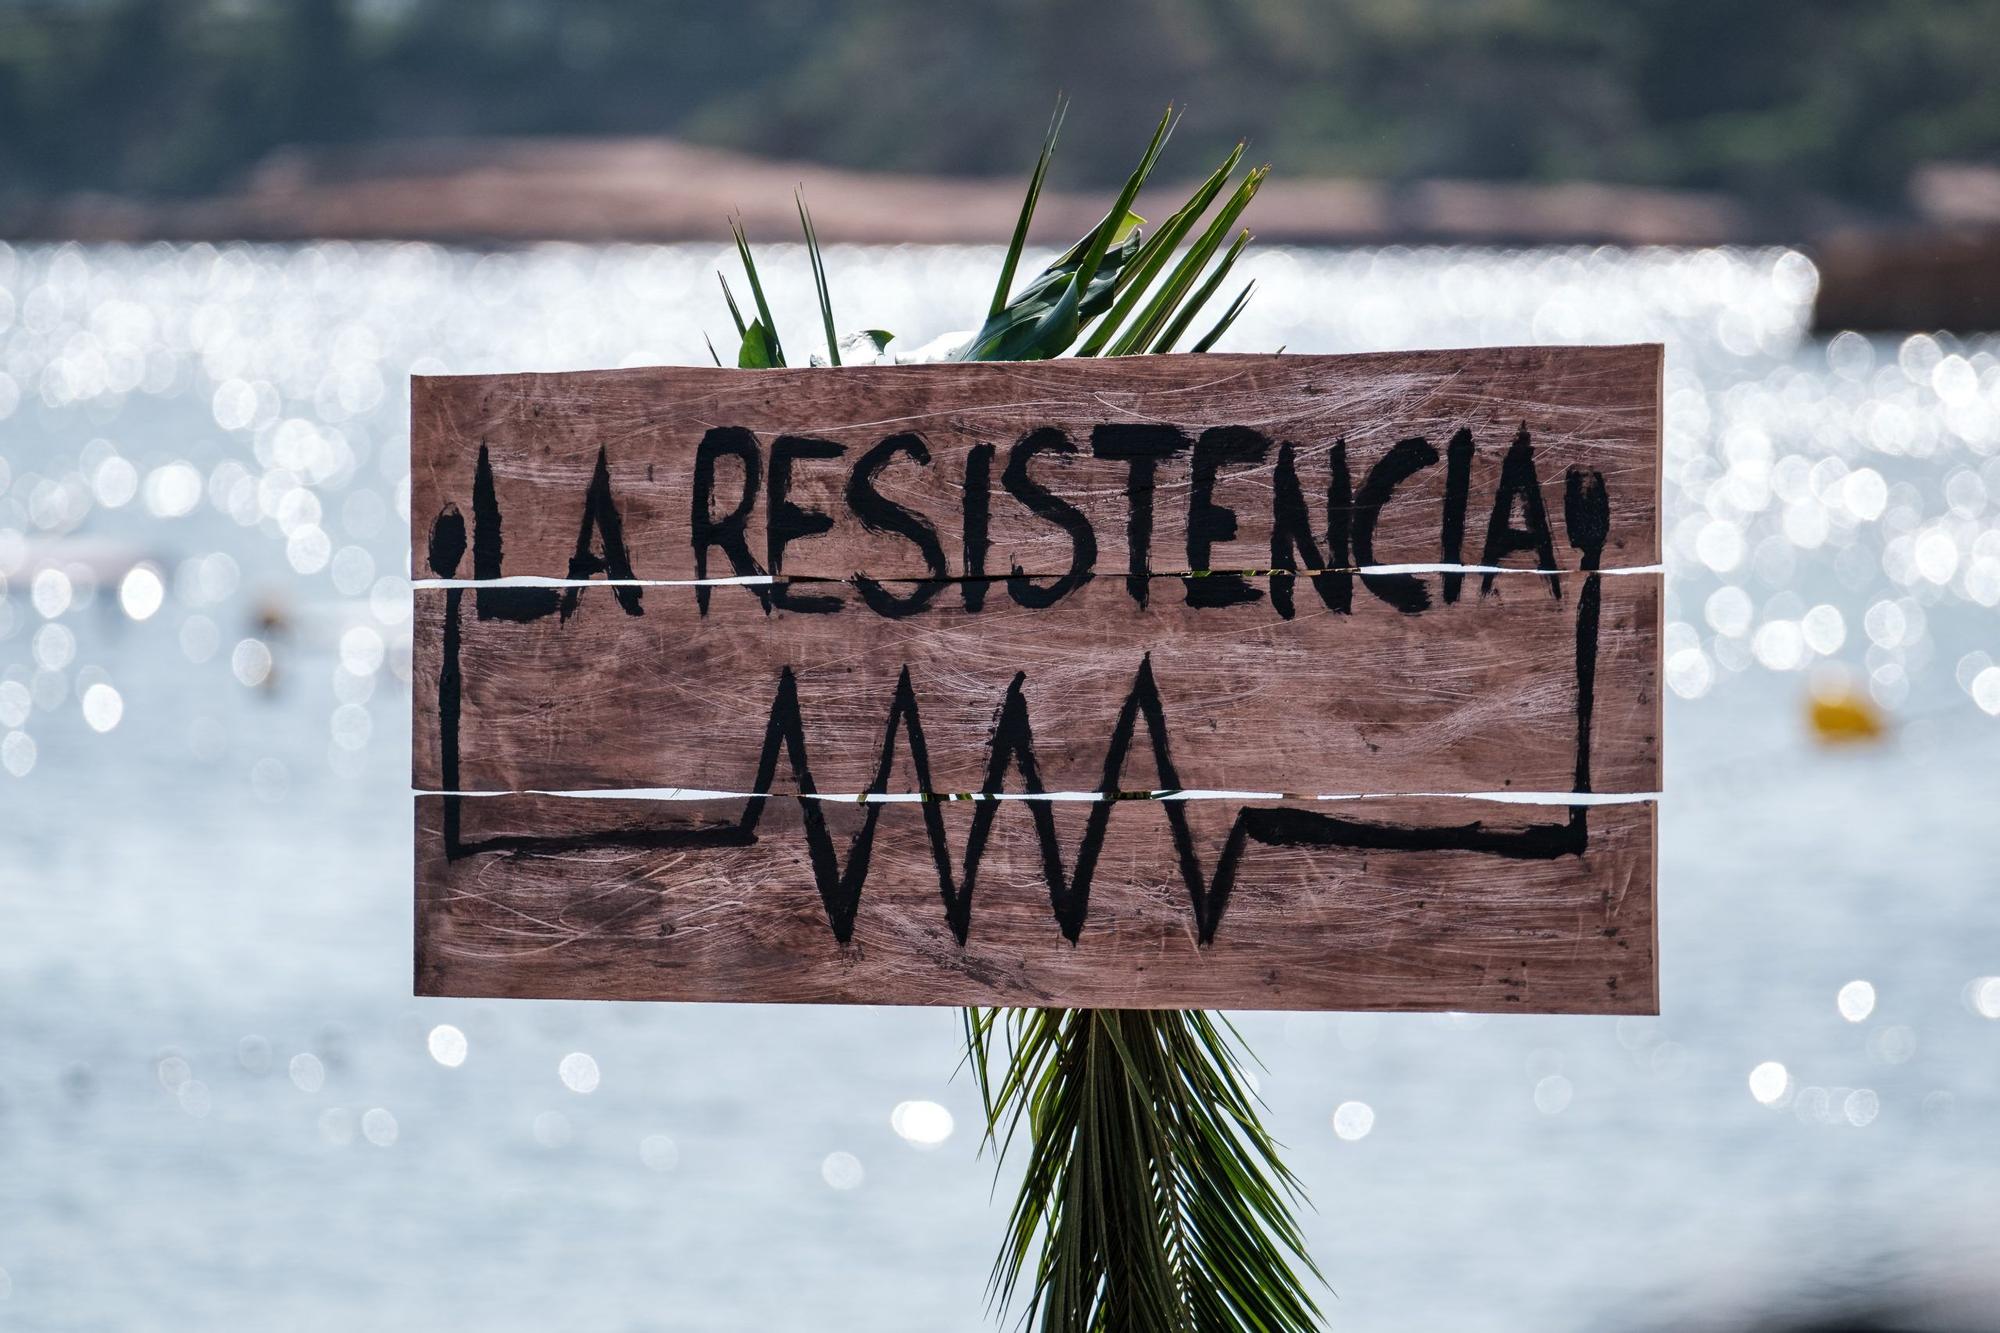 'La Resistencia' se despide esta quinta temporada desde Ibiza